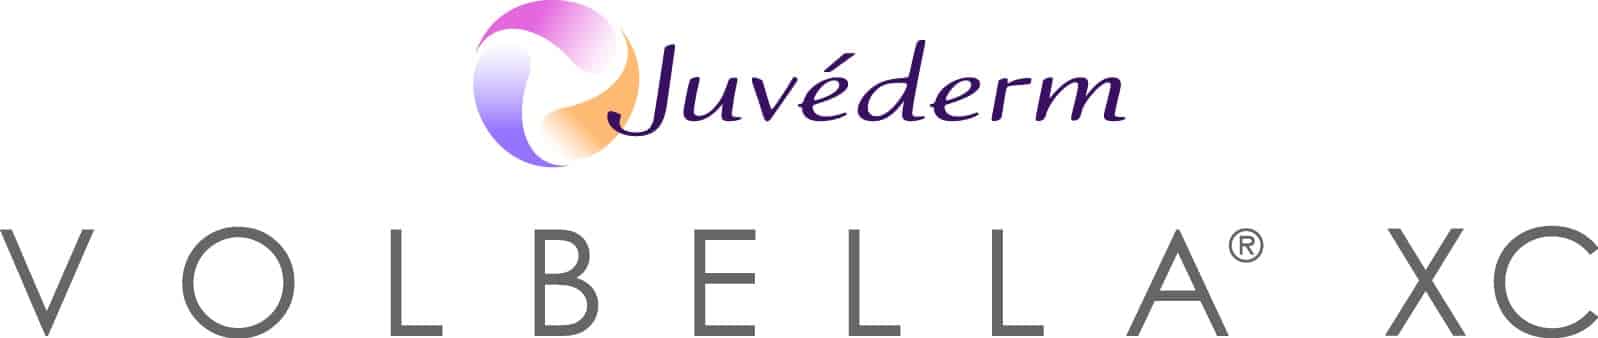 volbellaxc logo color